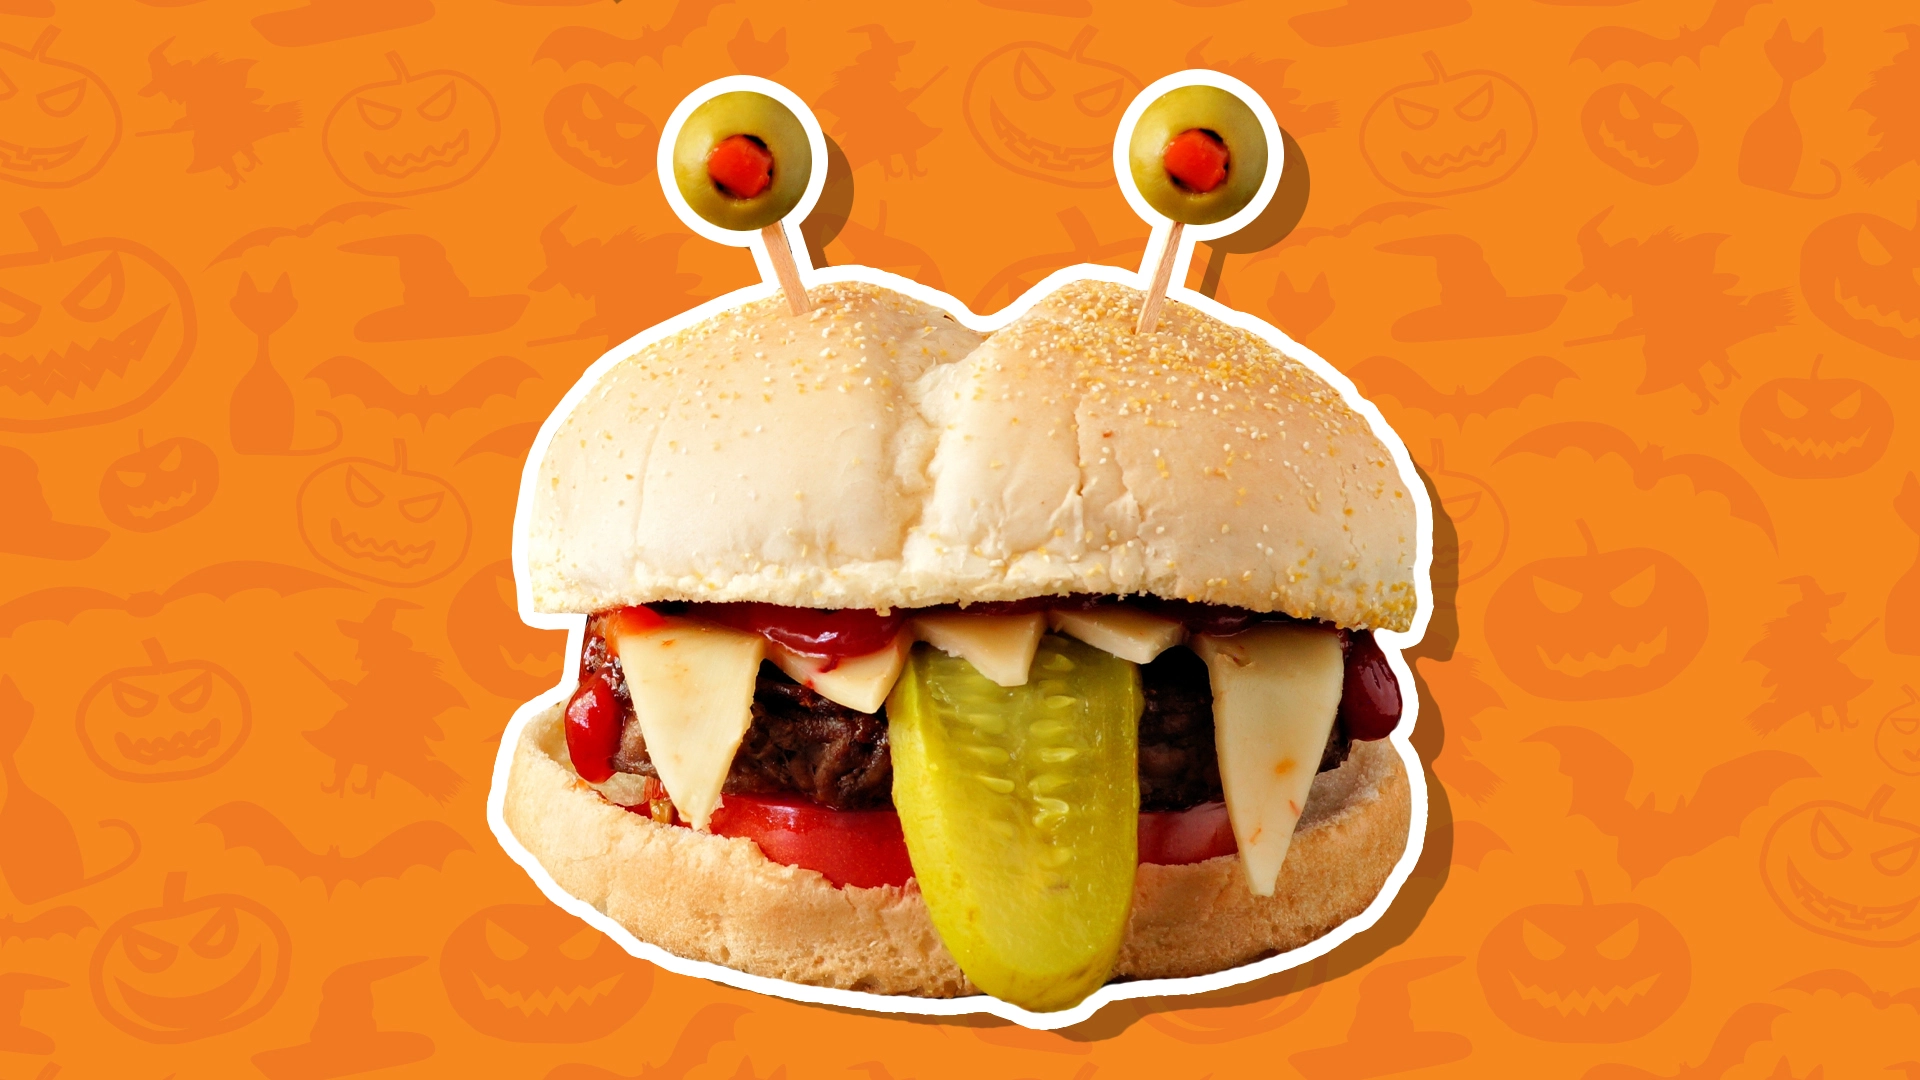 Spooky Halloween burger